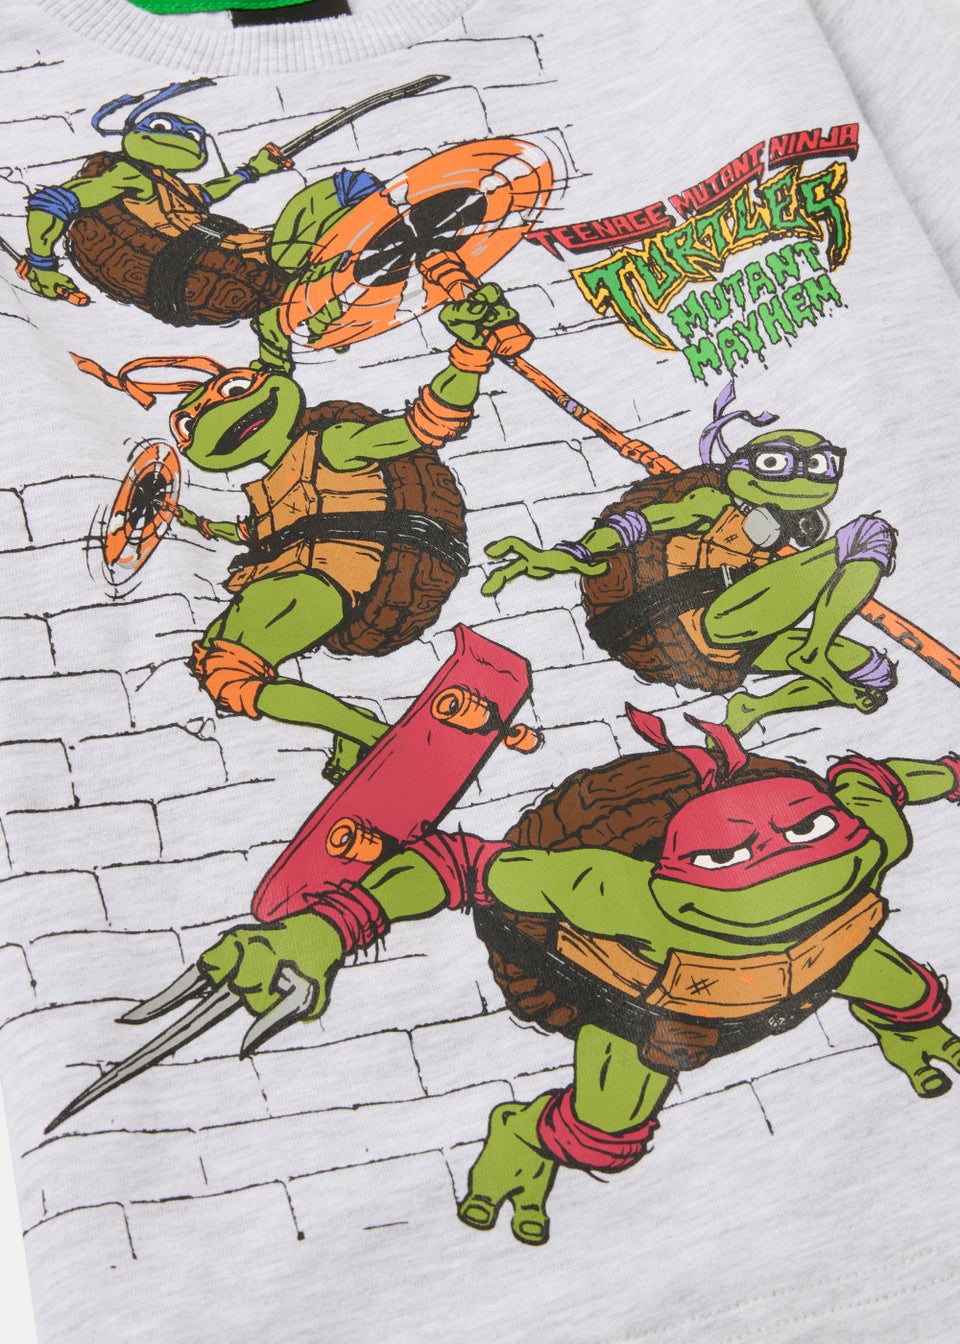 Kids Teenage Mutant Ninja Turtles Pyjama Set (4-13yrs) - Matalan